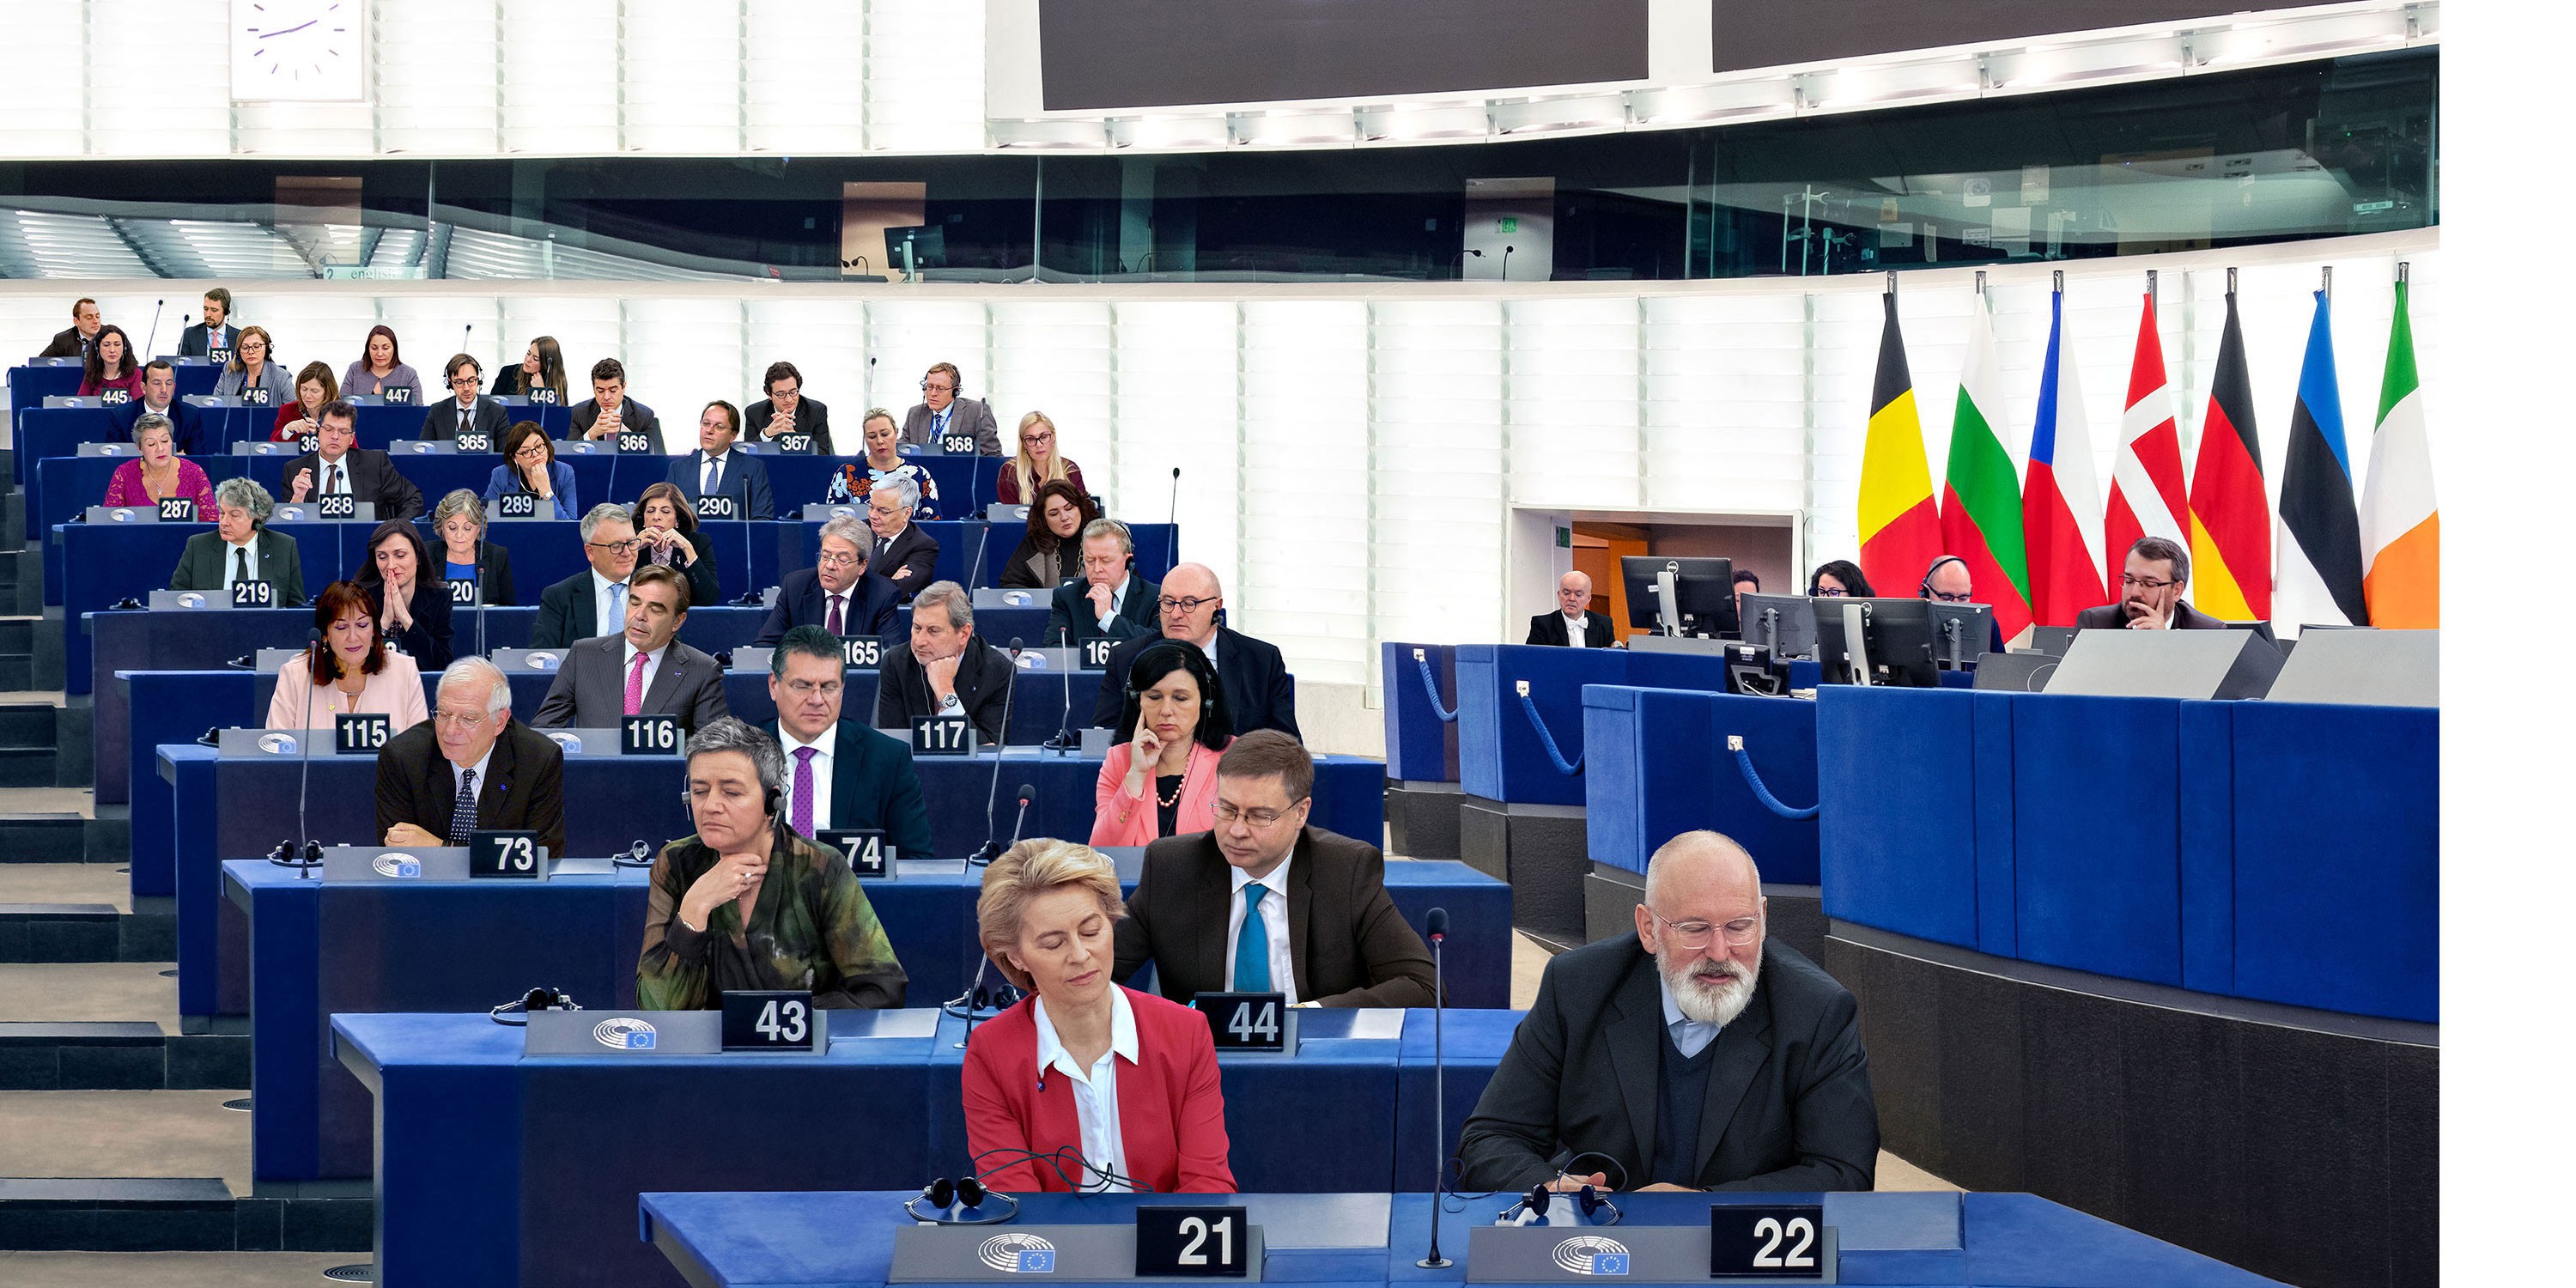 Das Parlament träumt - Ein poetisches Bild des Europäischen Parlaments